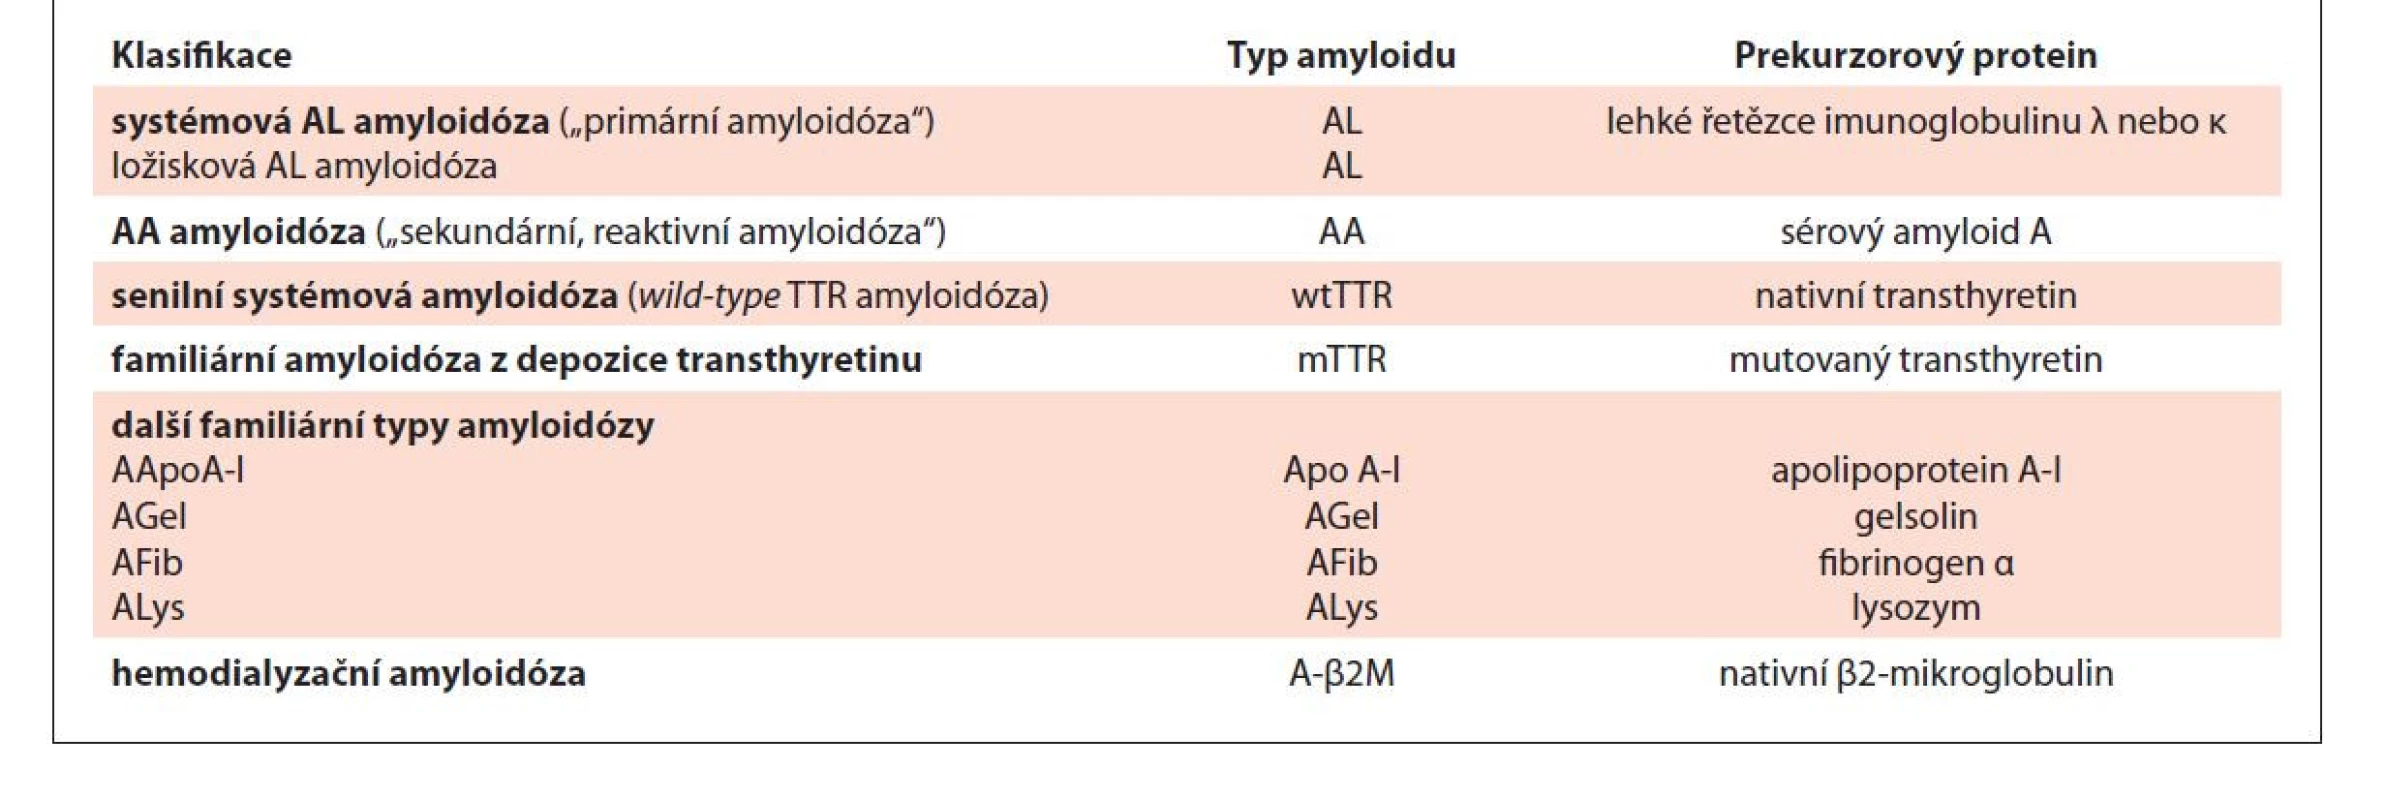 Zjednodušená klasifikace nejčastějších typů amyloidóz [Kyle, 1995a; Sipe, 2016, Benson, 2020].